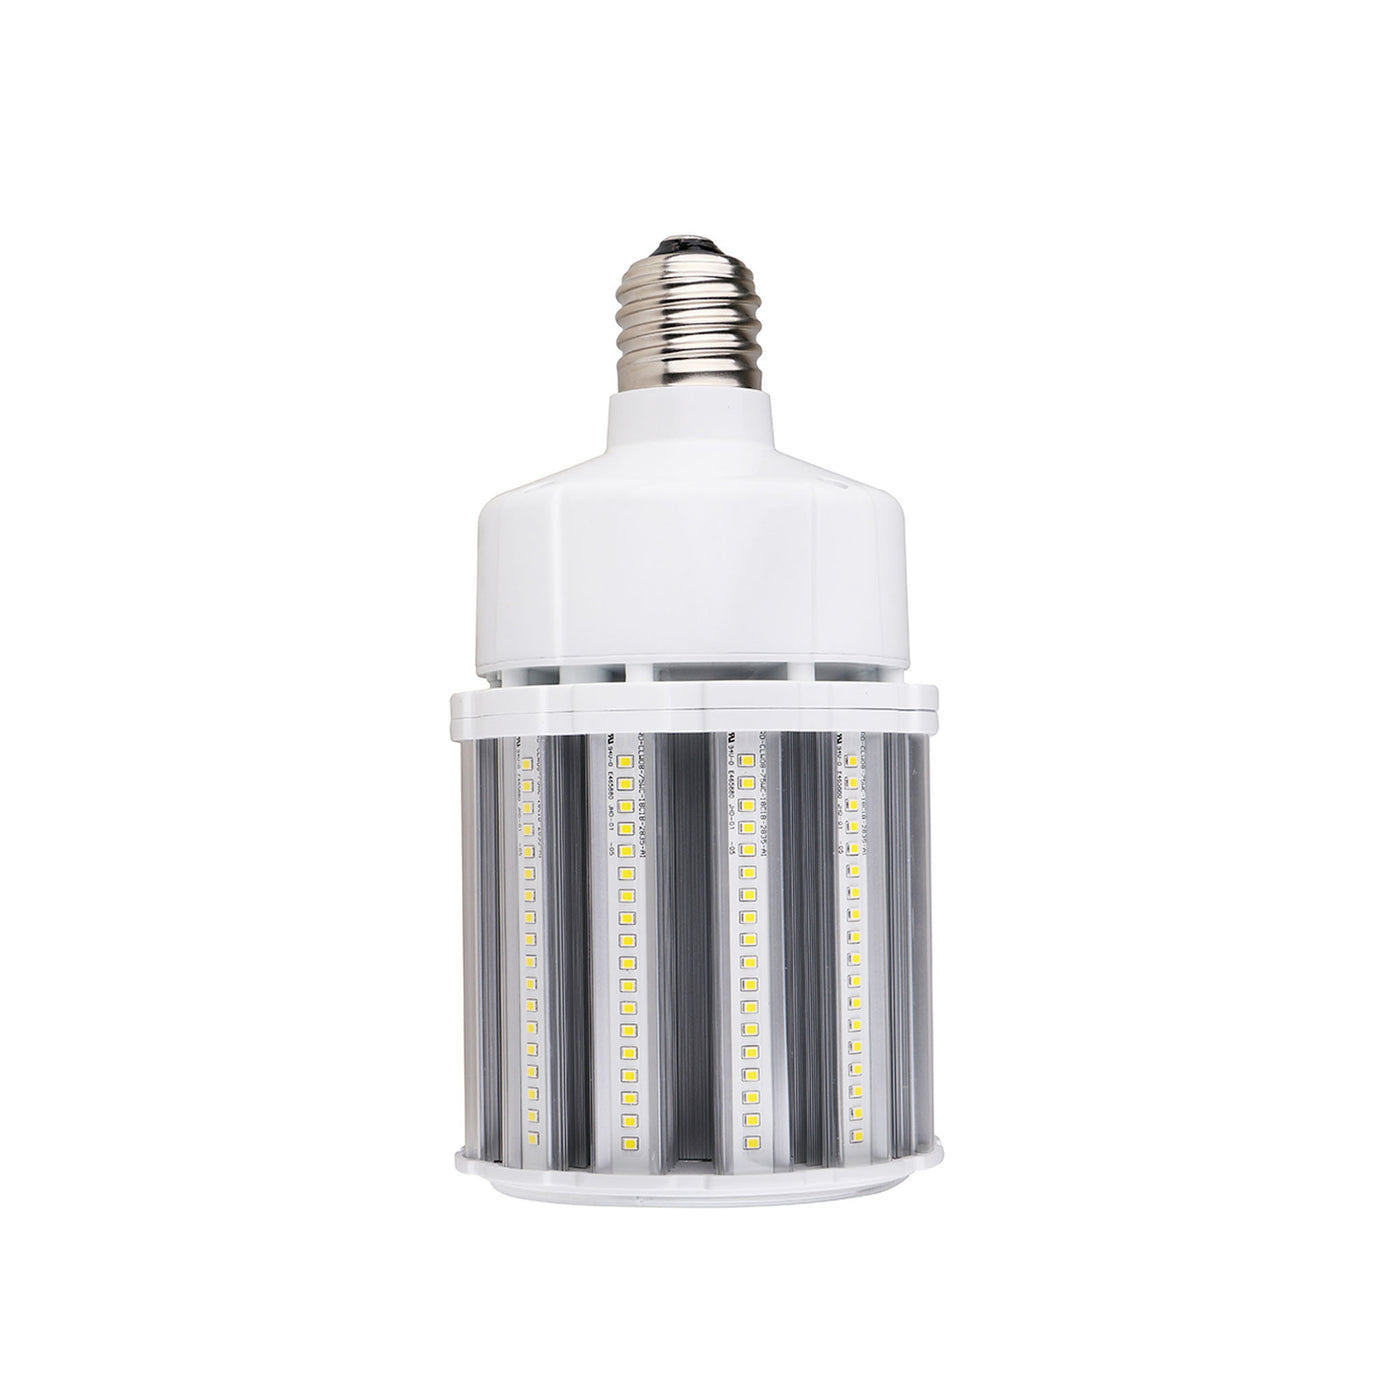 High Lumen LED Corn Lamp, 75 Watt, 120-277V, 3000K or 5000K, E39 Base